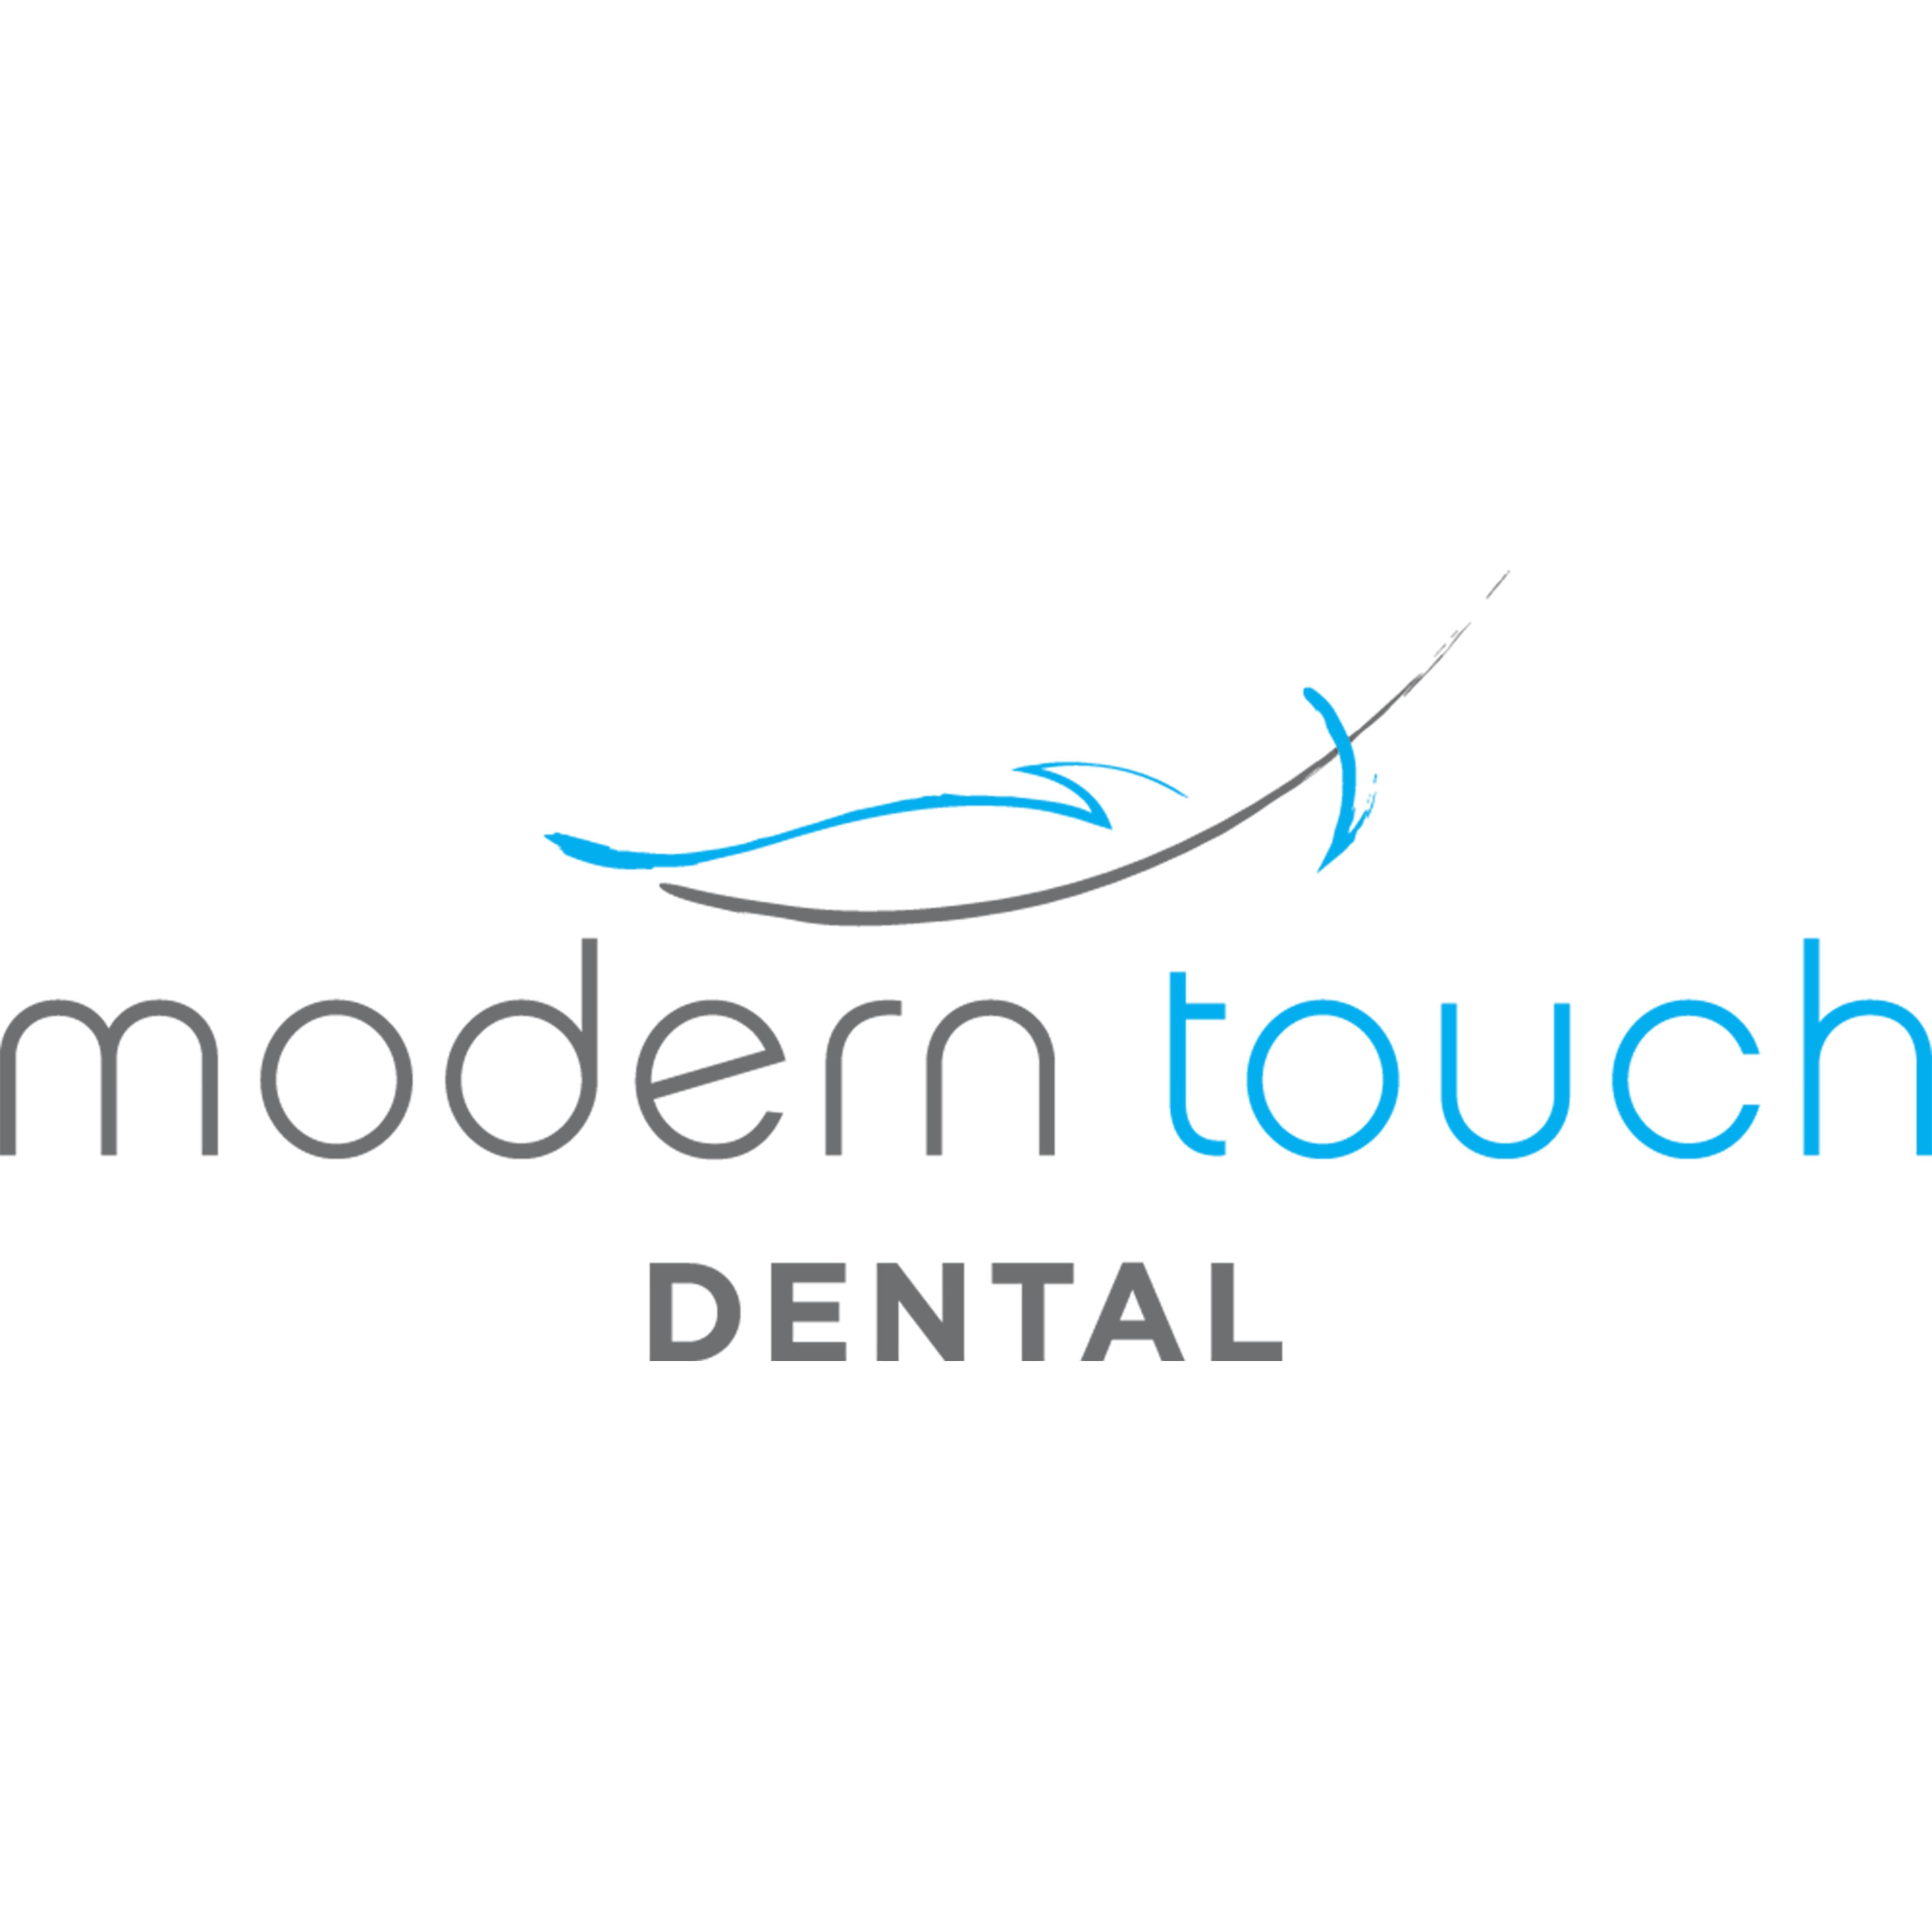 Modern Touch Dental-Glendale